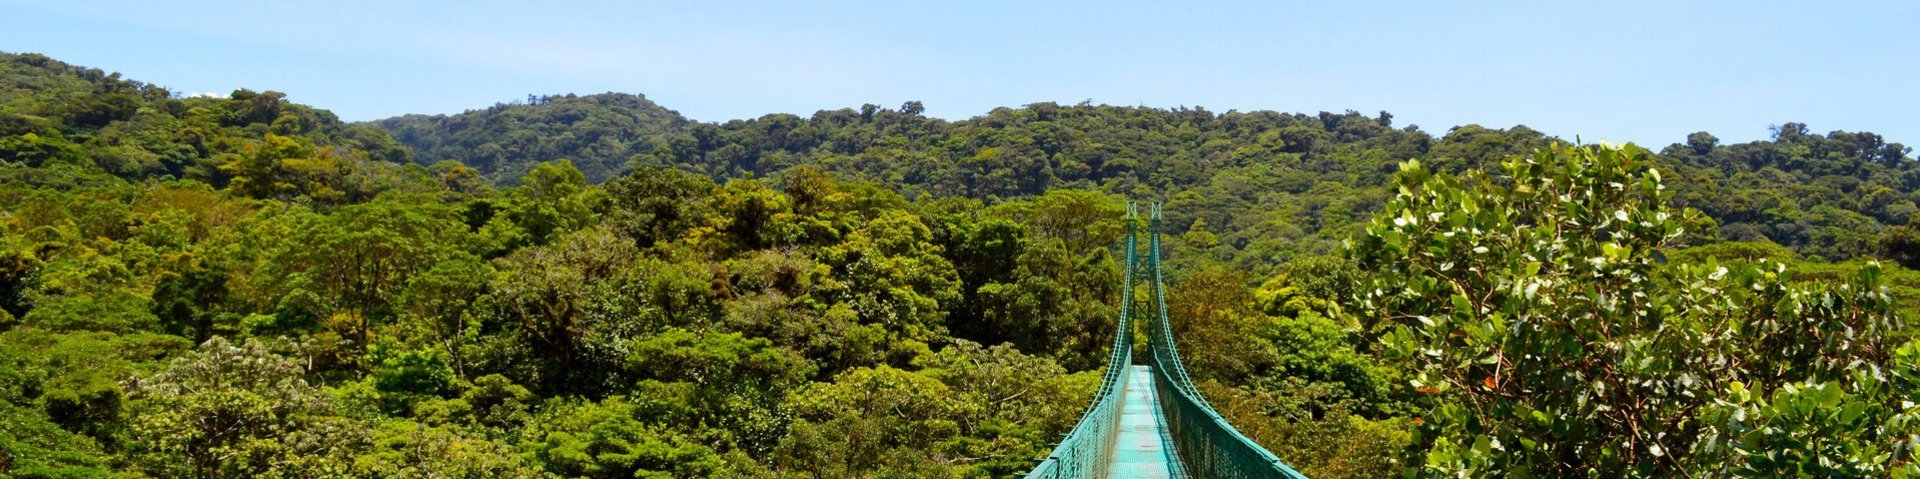 Hängebrücke im Nebelwald von Monteverde in Costa Rica